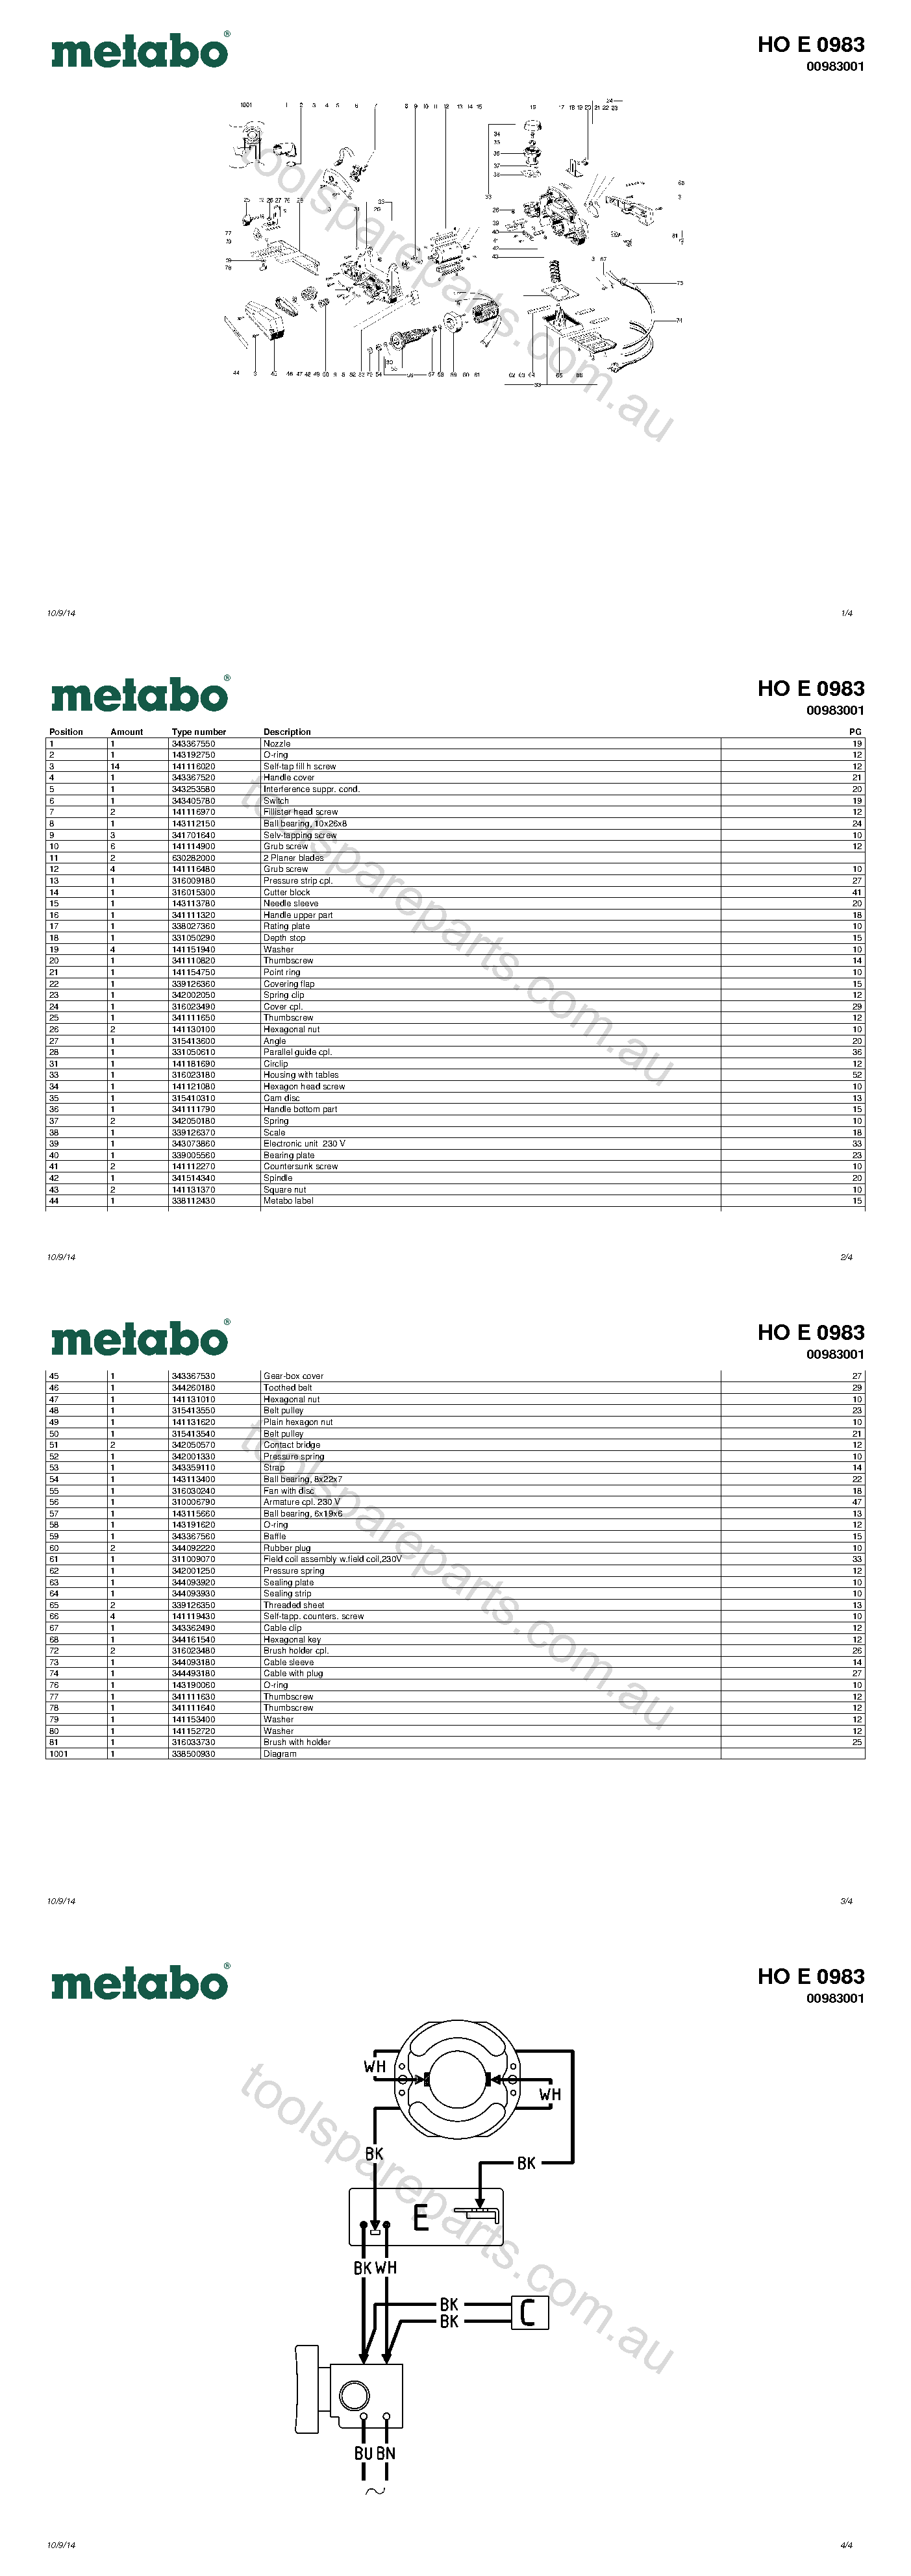 Metabo HO E 0983 00983001  Diagram 1